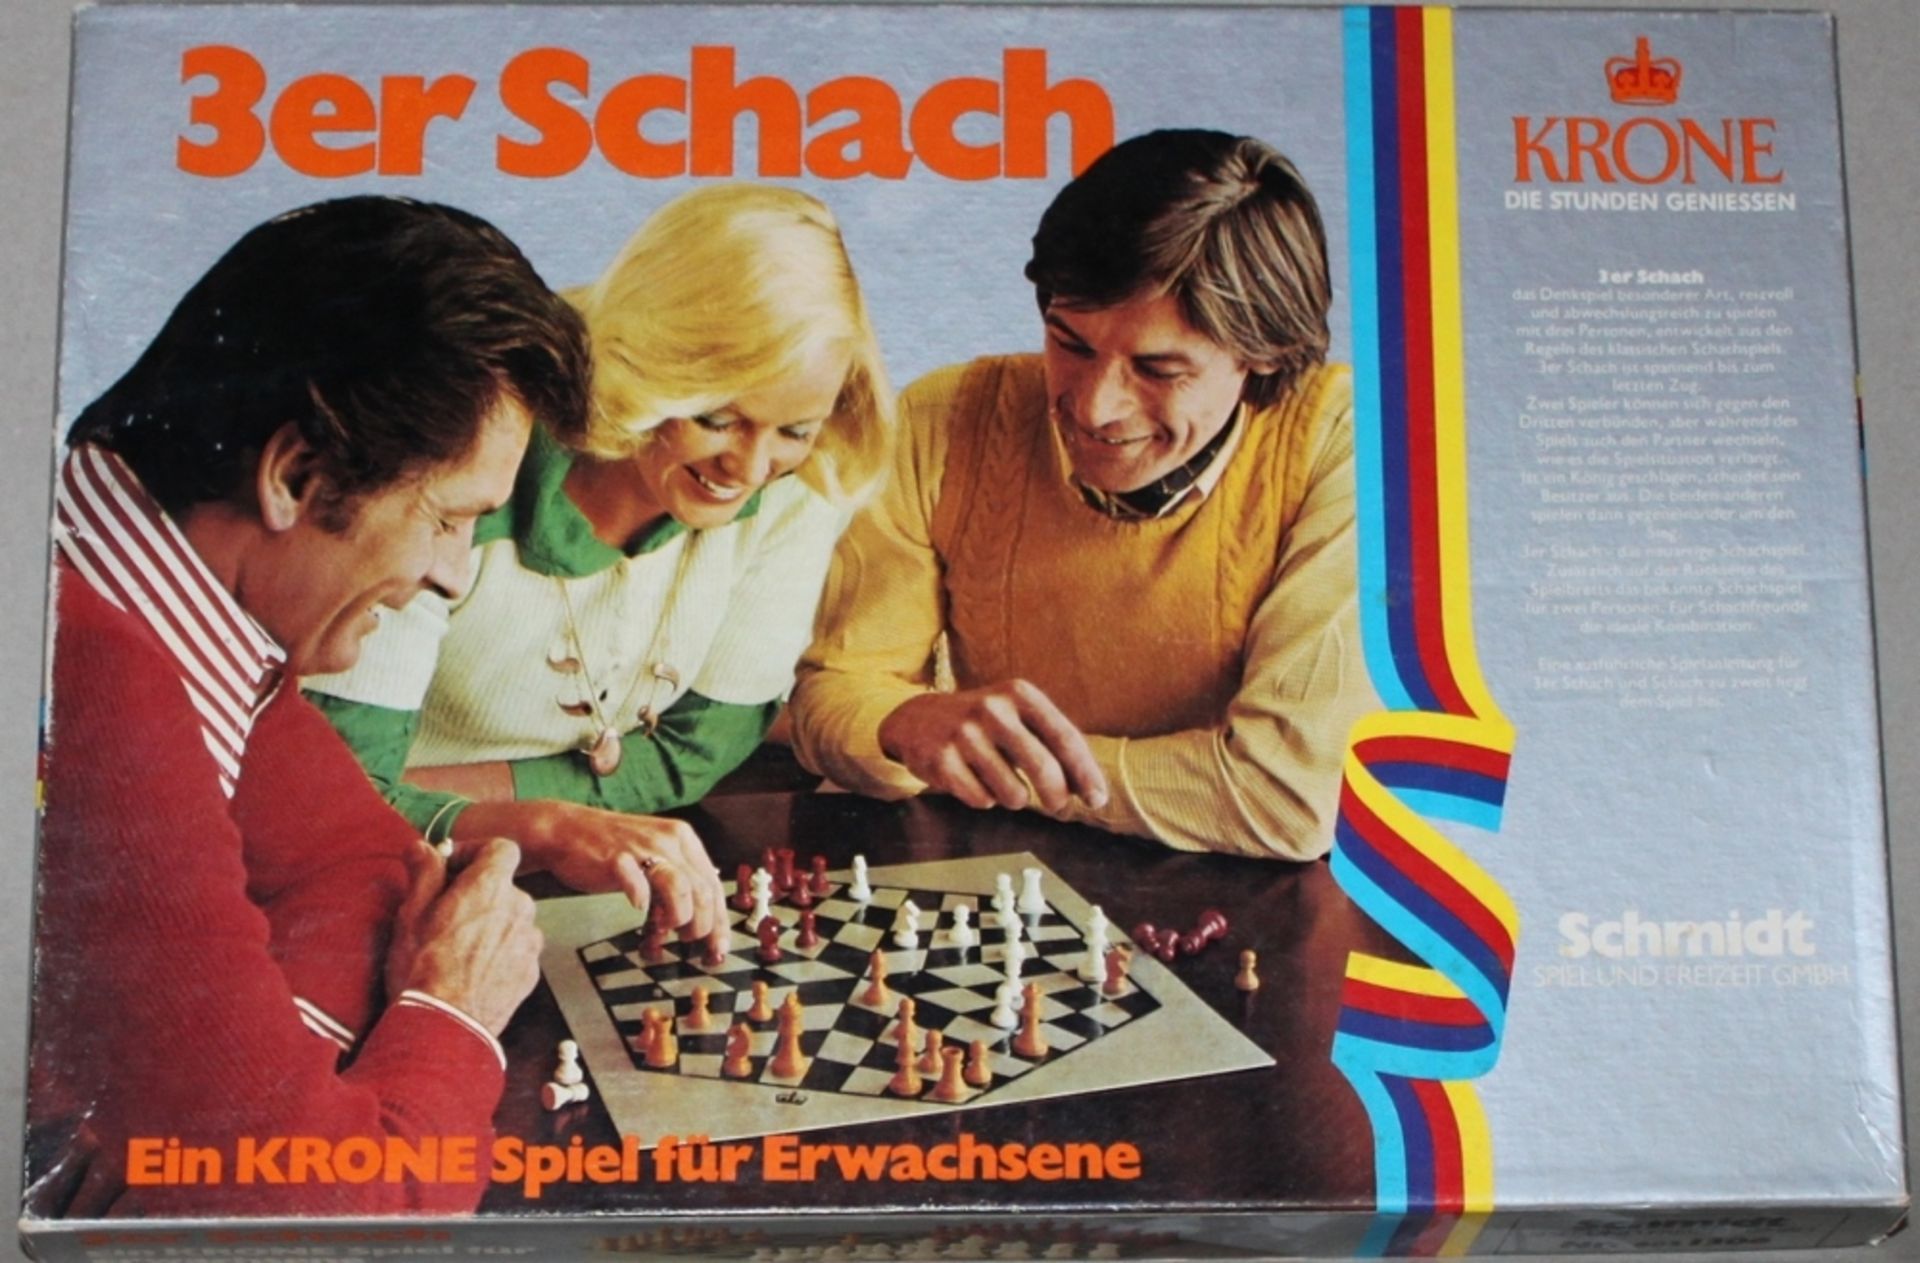 Europa. Deutschland. 3er Schach. Das Krone Spiel für Erwachsene (Nr. 606 1306) mit faltbarem